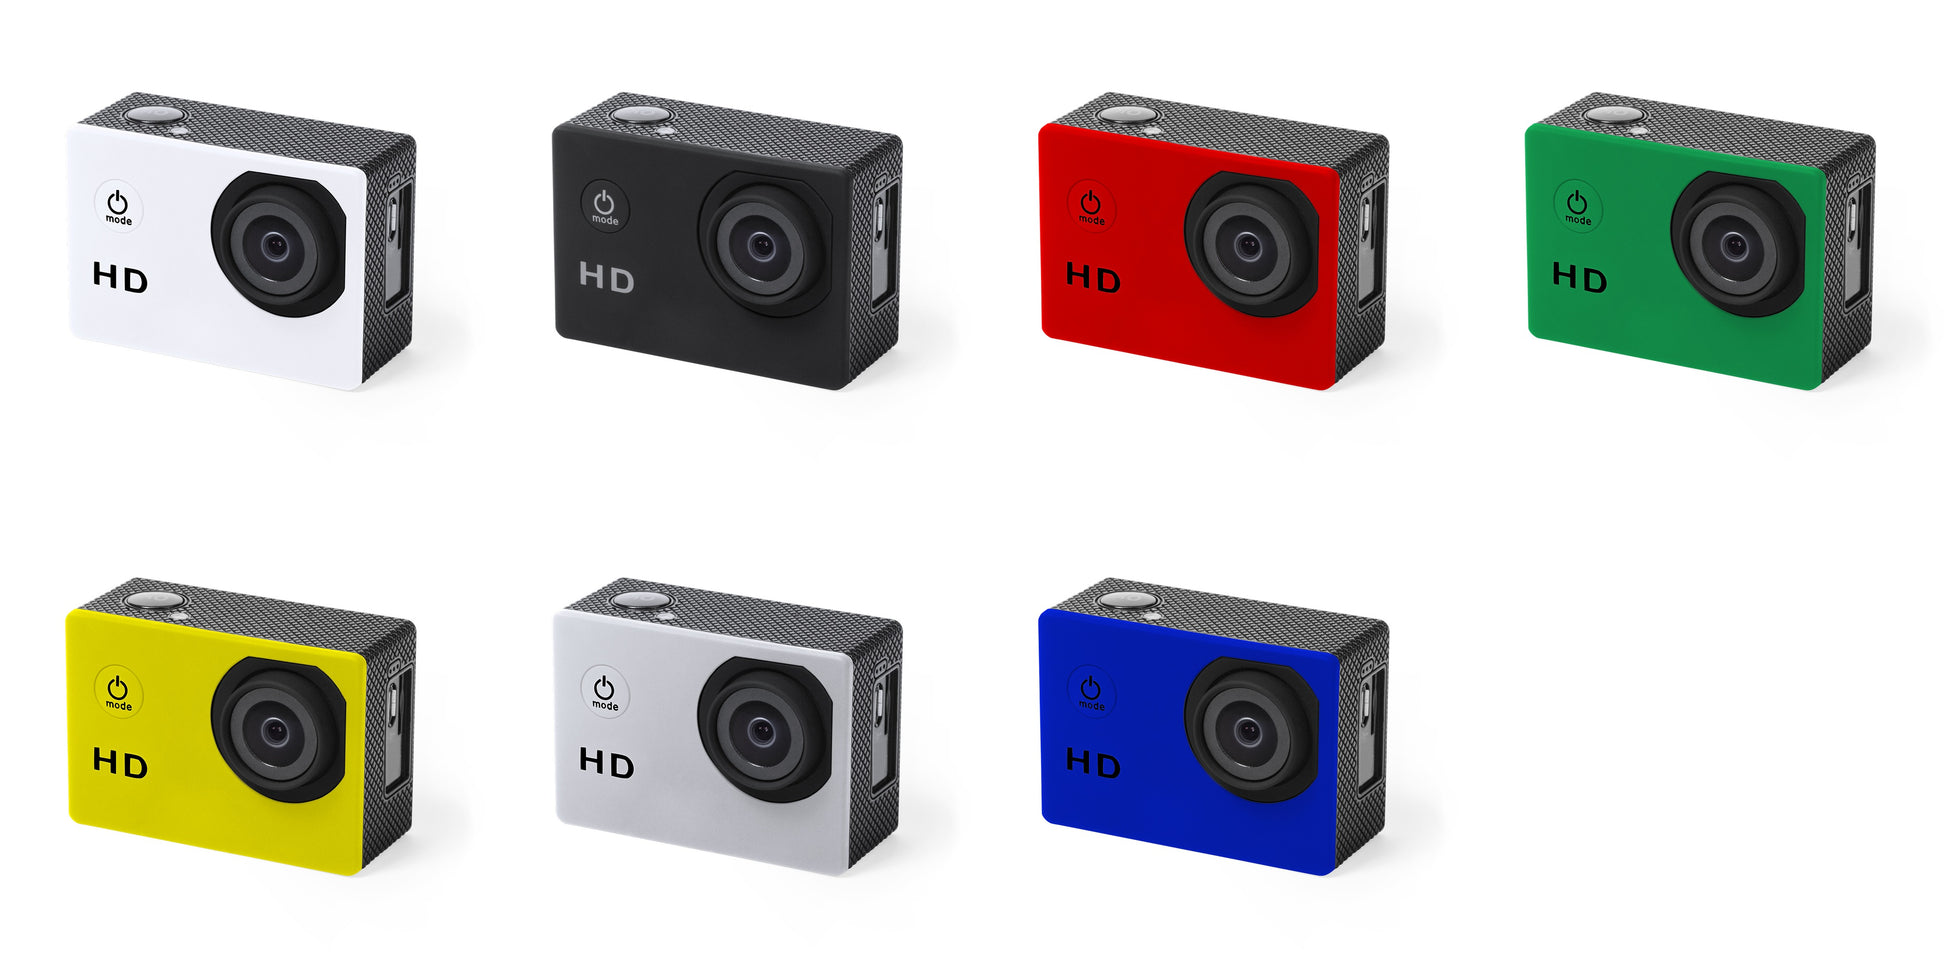 Caméra de sport, capture vidéo hd 720p, batterie 900 mAh KOMIR coloris multiples